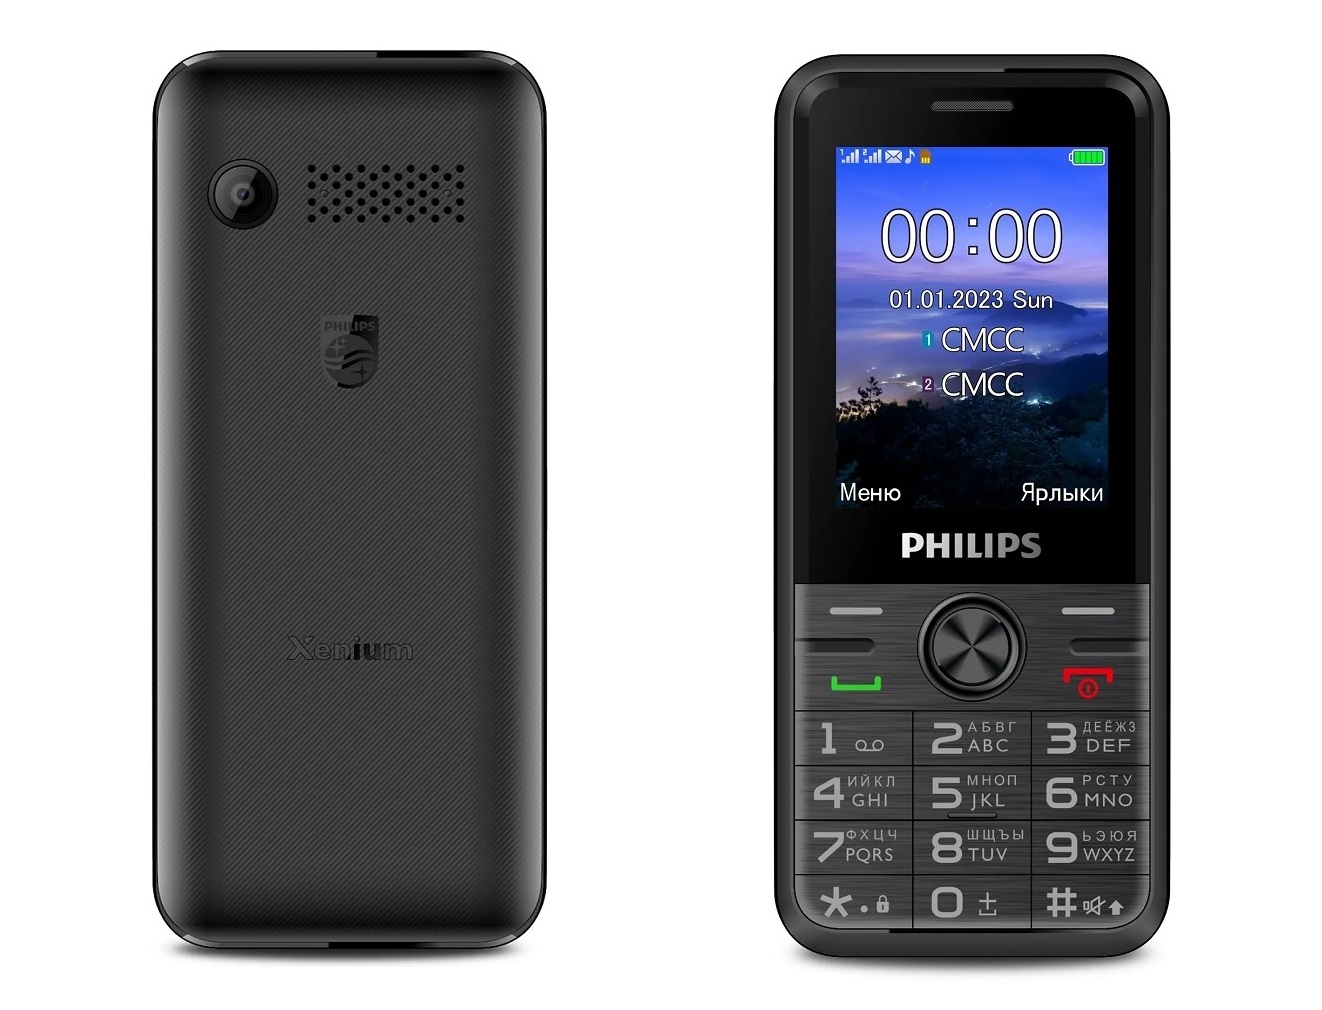 Телефон Philips Xenium E6500 с аккумулятором 1700 мАч вышел в России